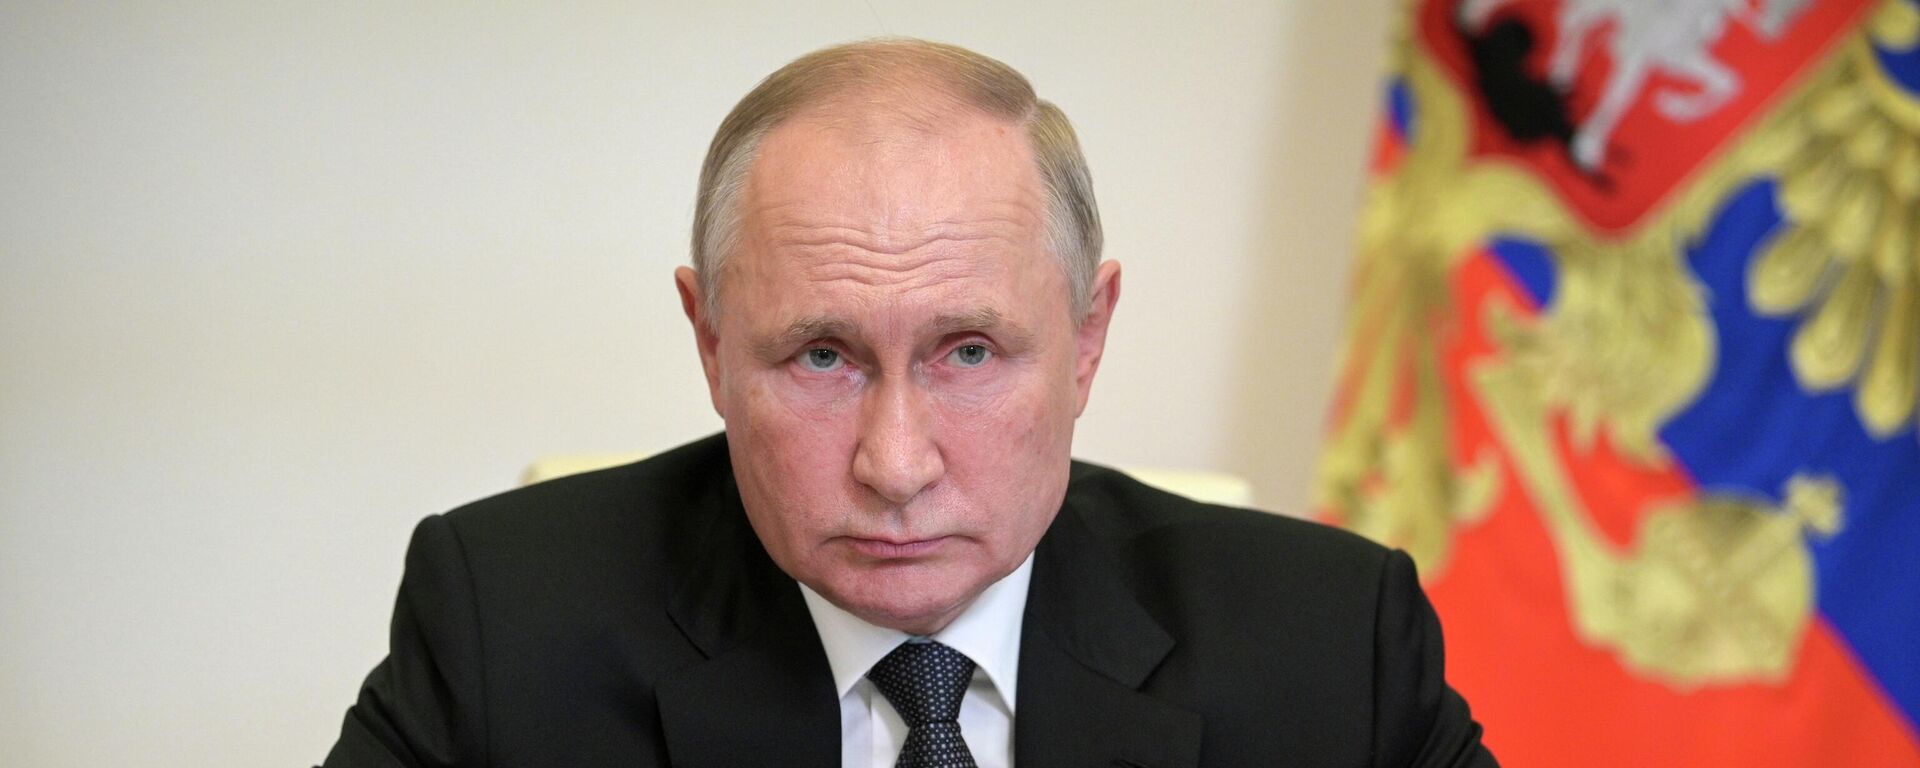 El presidente de Rusia Vladímir Putin - Sputnik Mundo, 1920, 21.10.2021